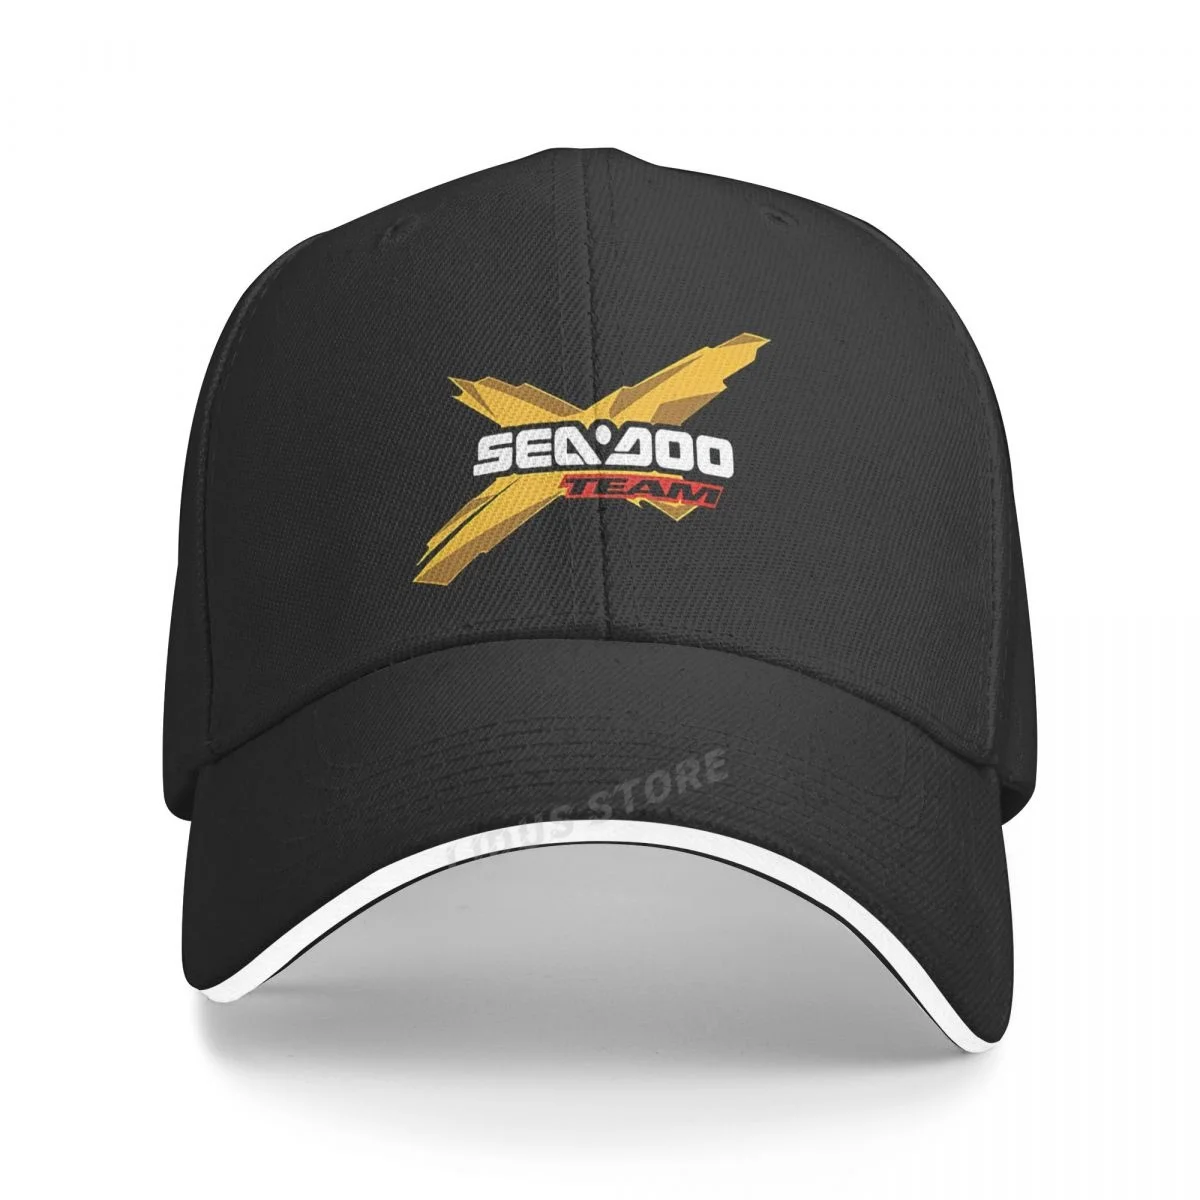 Sea Doo Seadoo Baseball Cap Adjustable Casual Man Outdoor Seadoo Team Hats